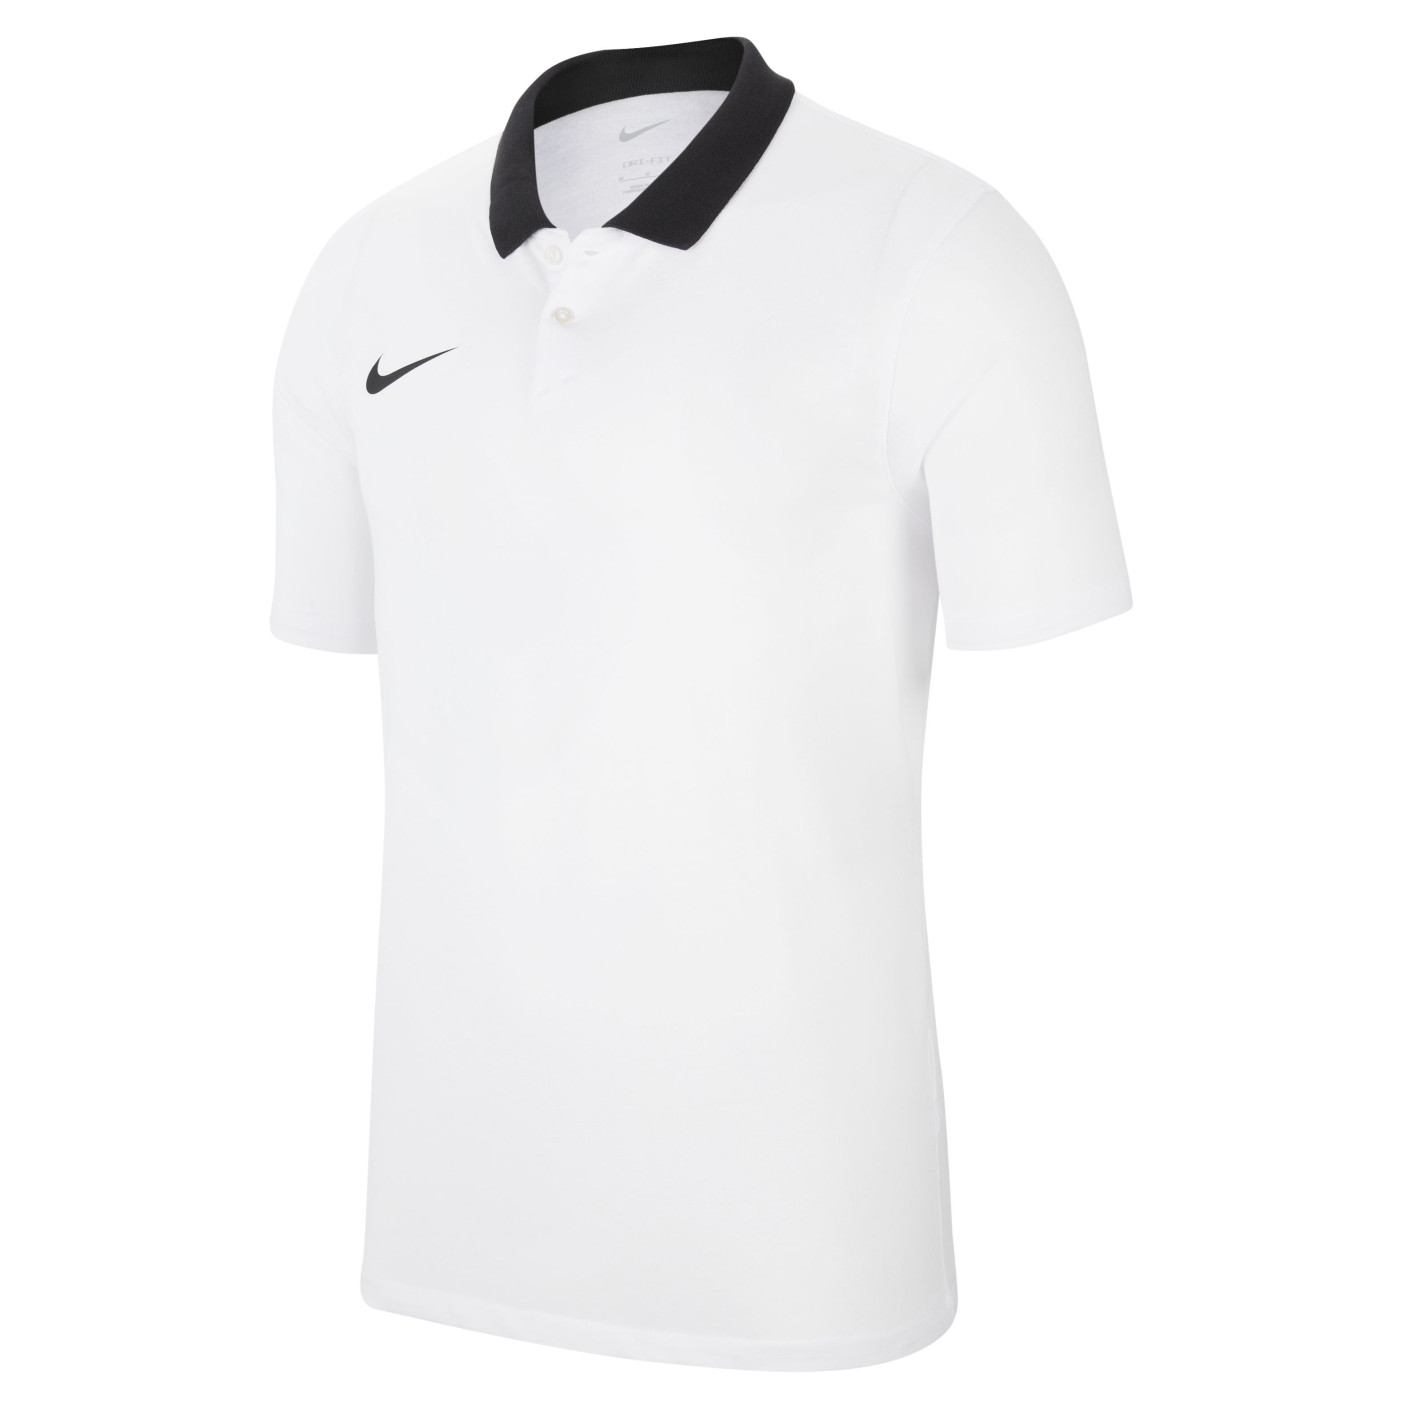 Nike Polo Park 20 White Black